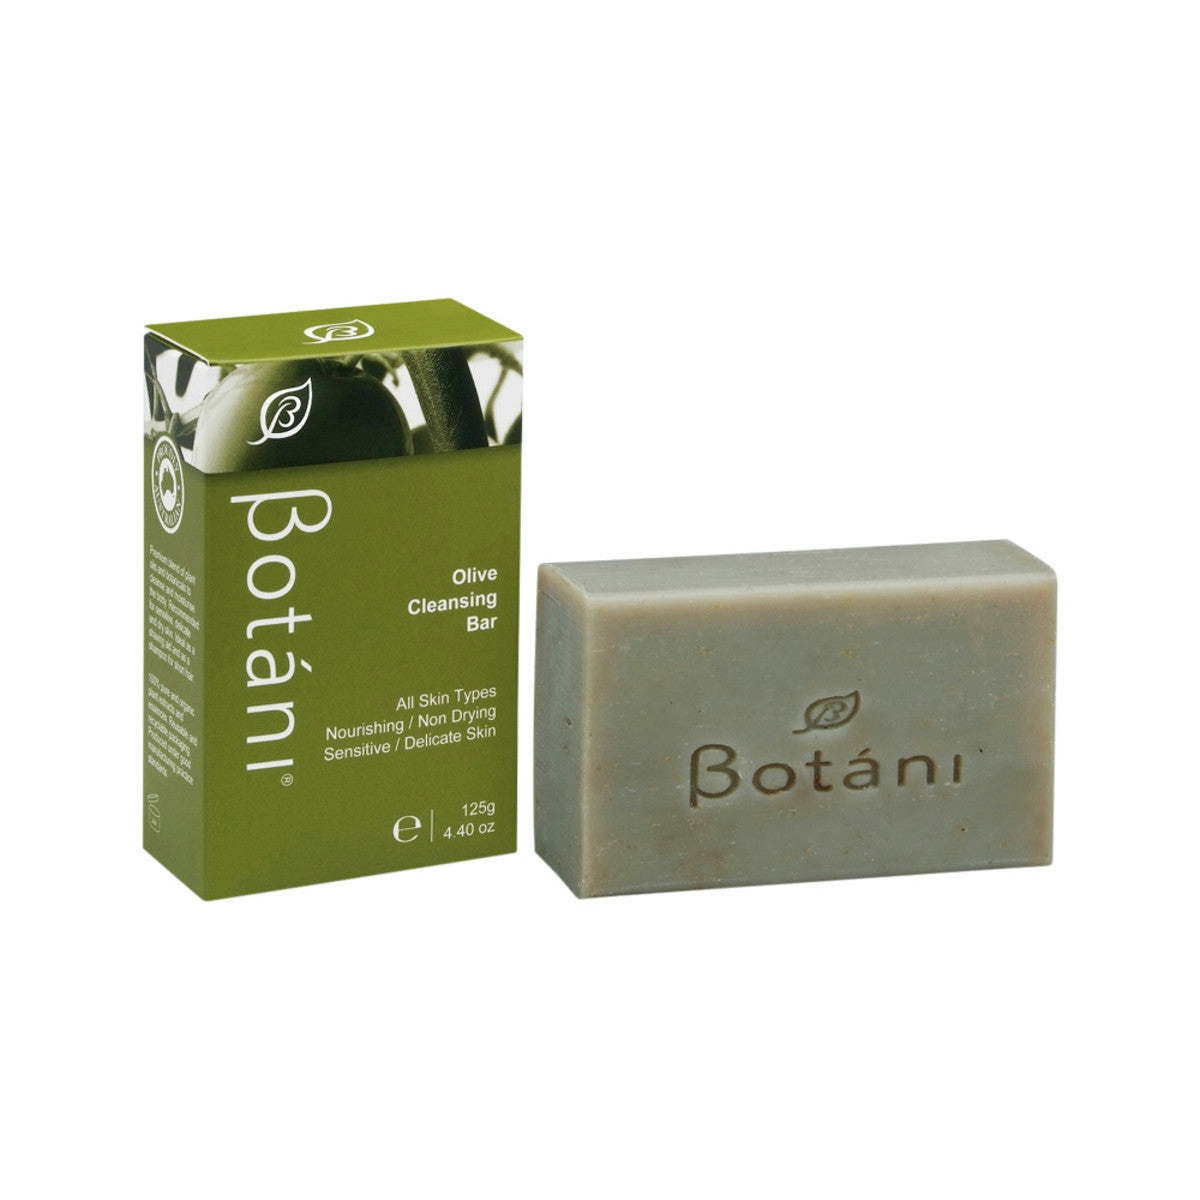 image of Botani Olive Cleansing Bar 125g on white background 